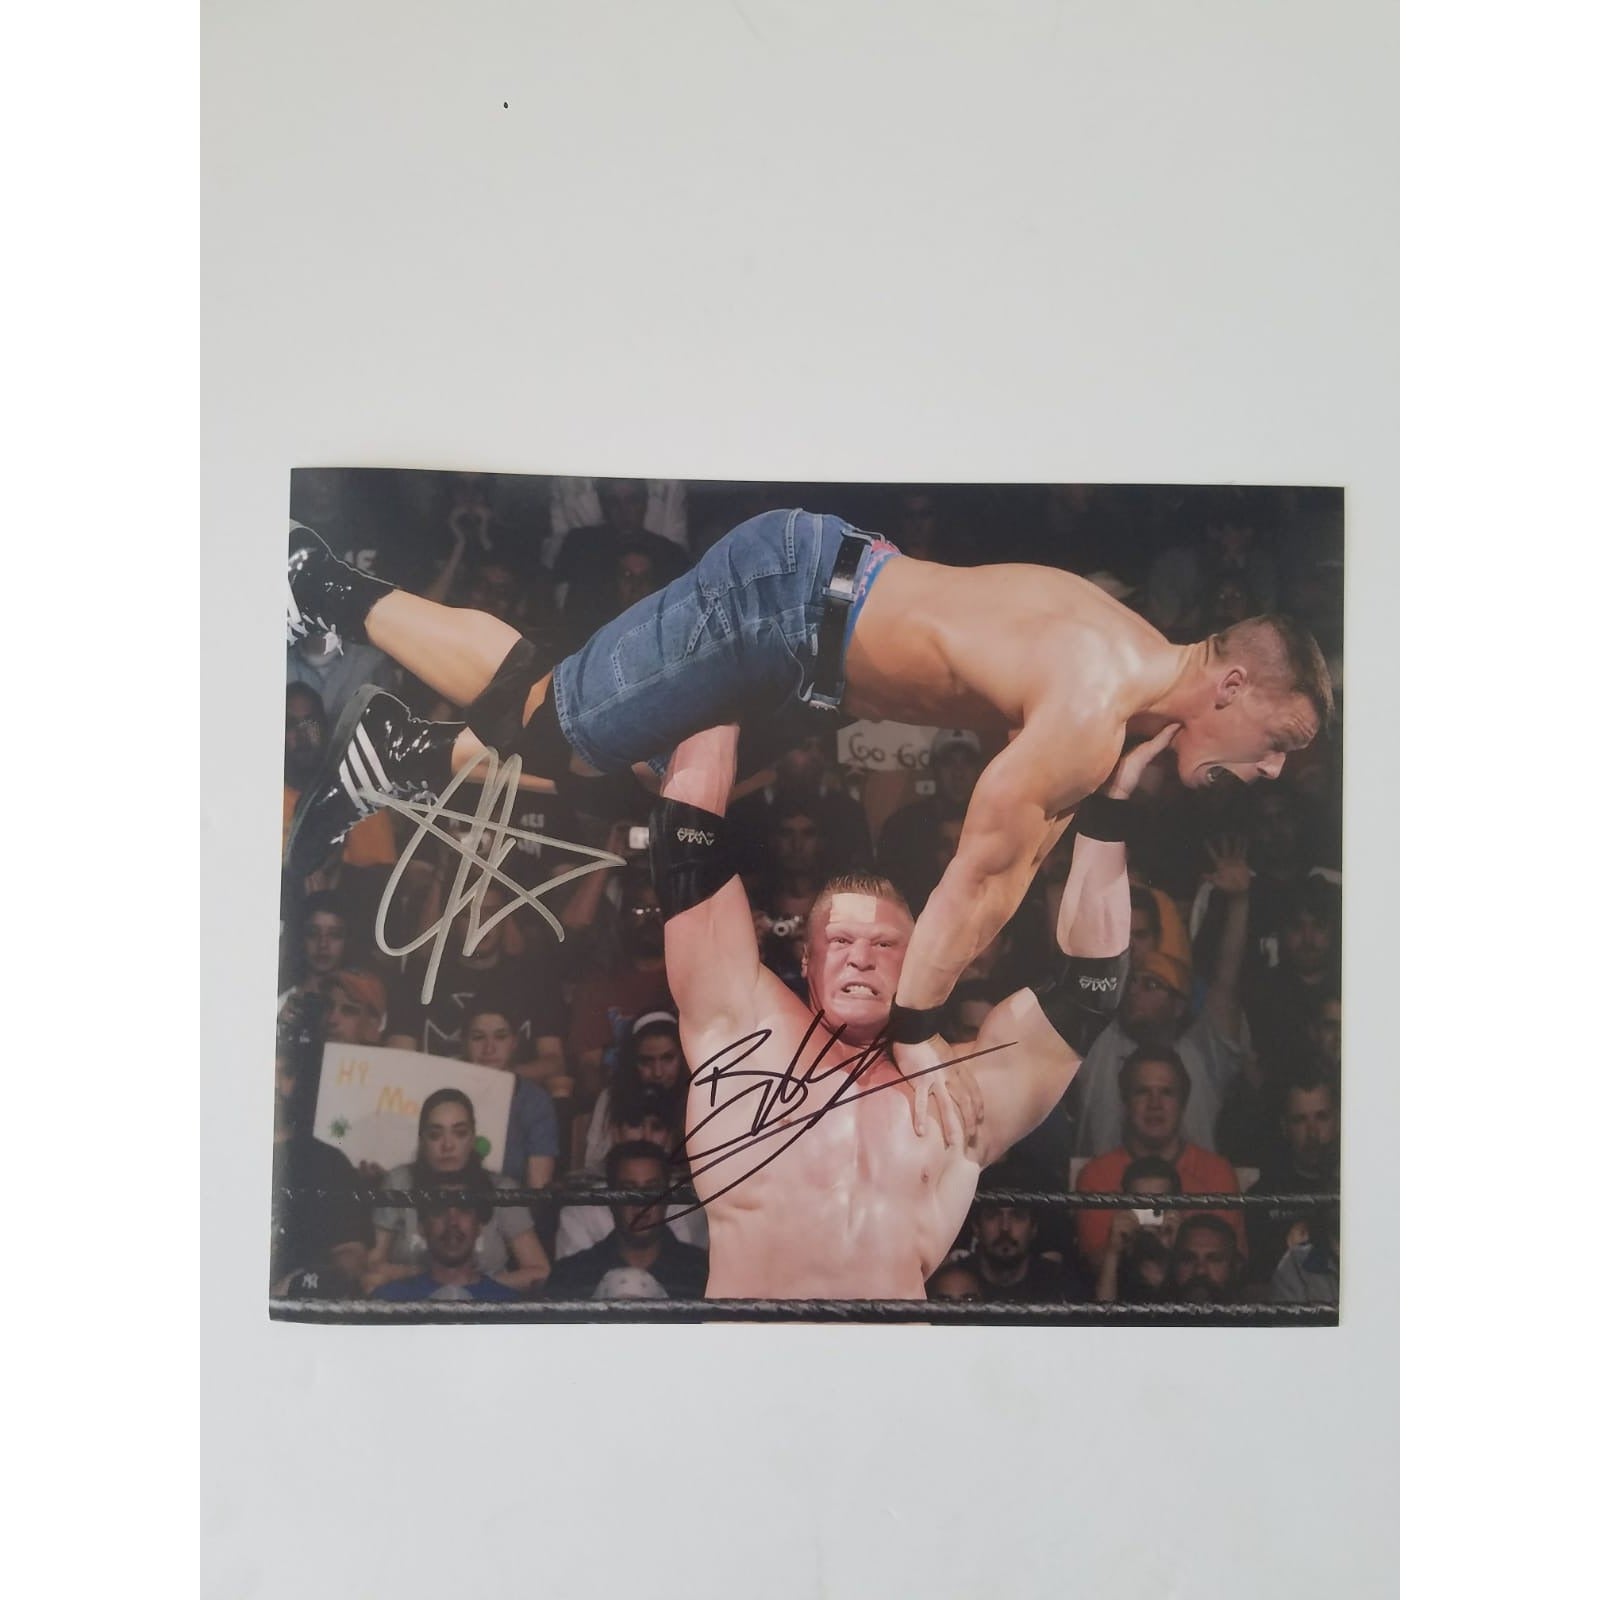 Brock Lesnar and John Cena 8x10 photograph signed